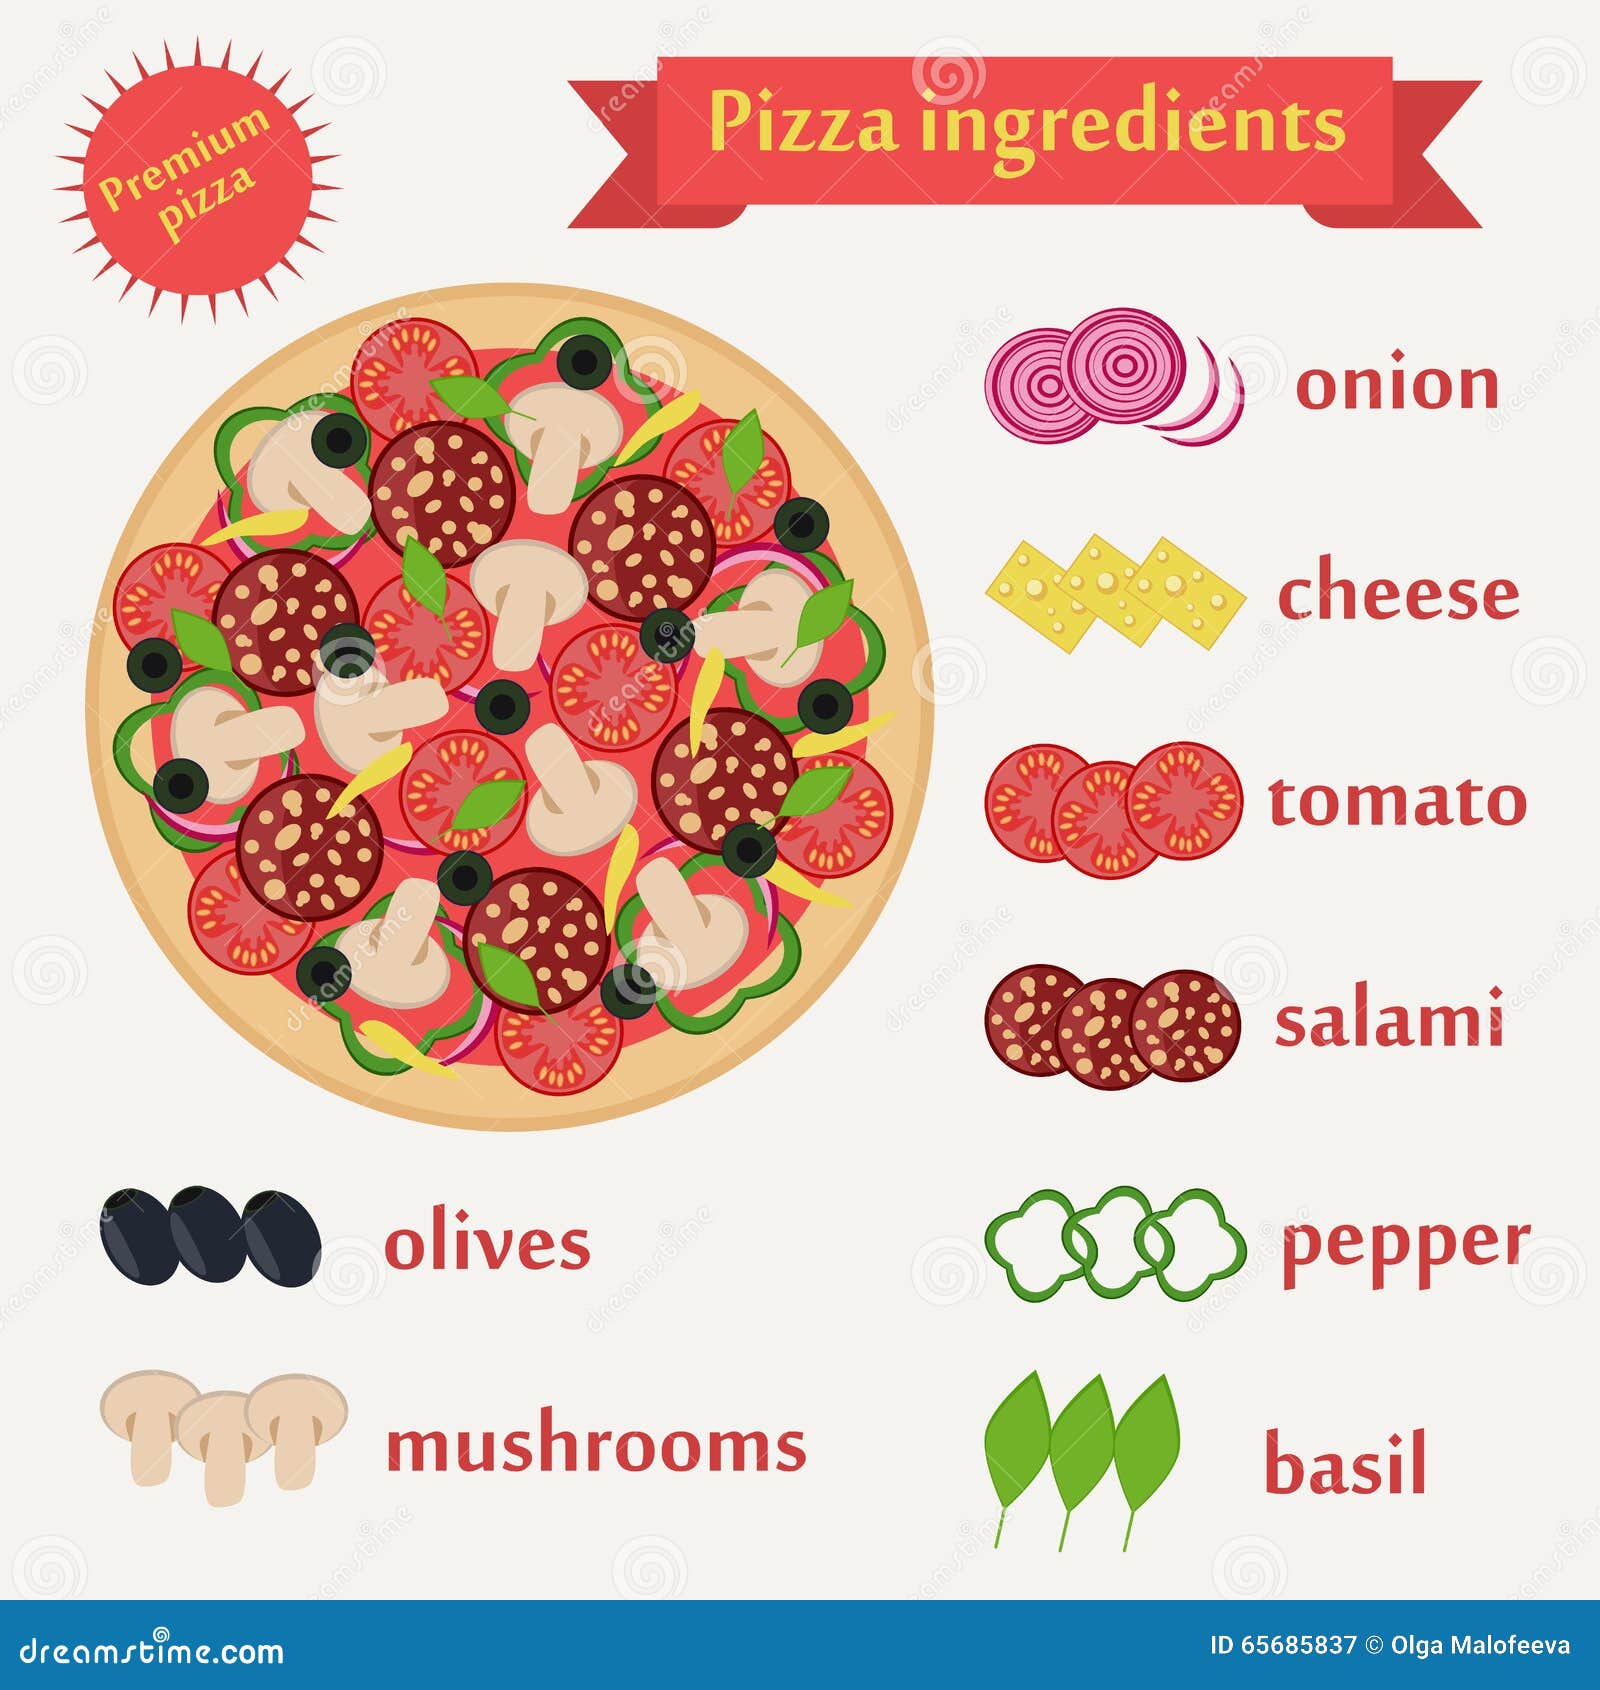 рецепт готовки пиццы на английском языке фото 1